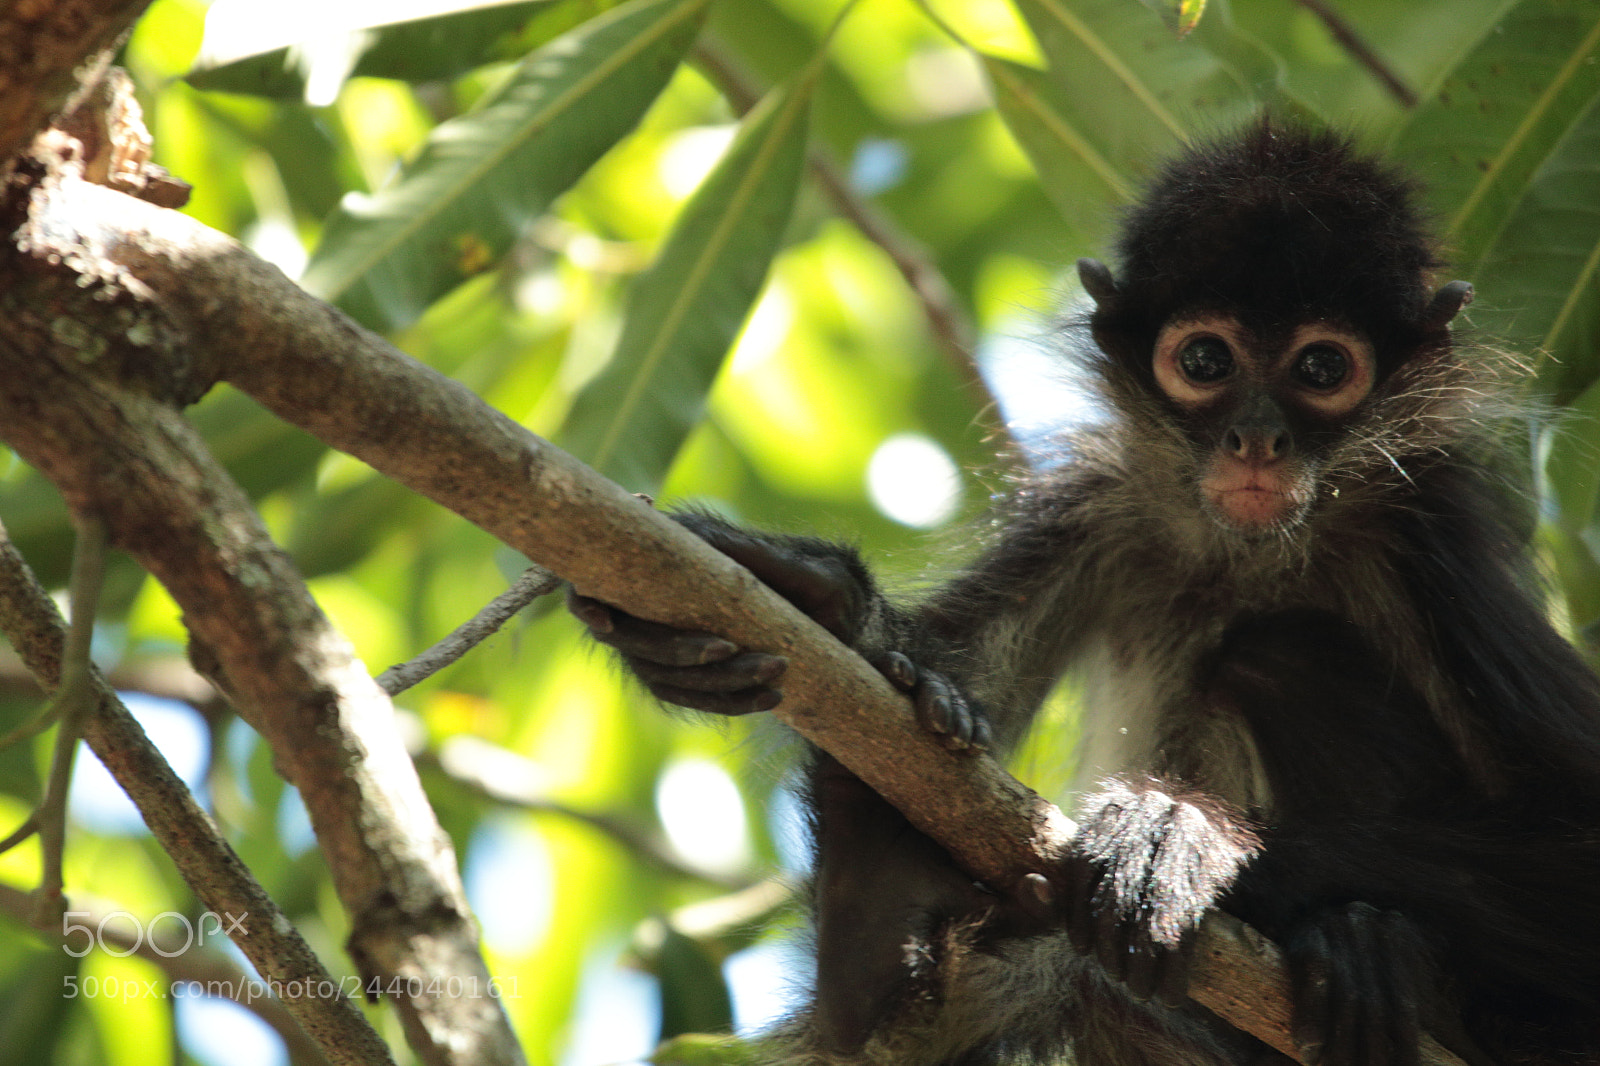 Canon EOS 70D sample photo. El salvadorian monkey photography